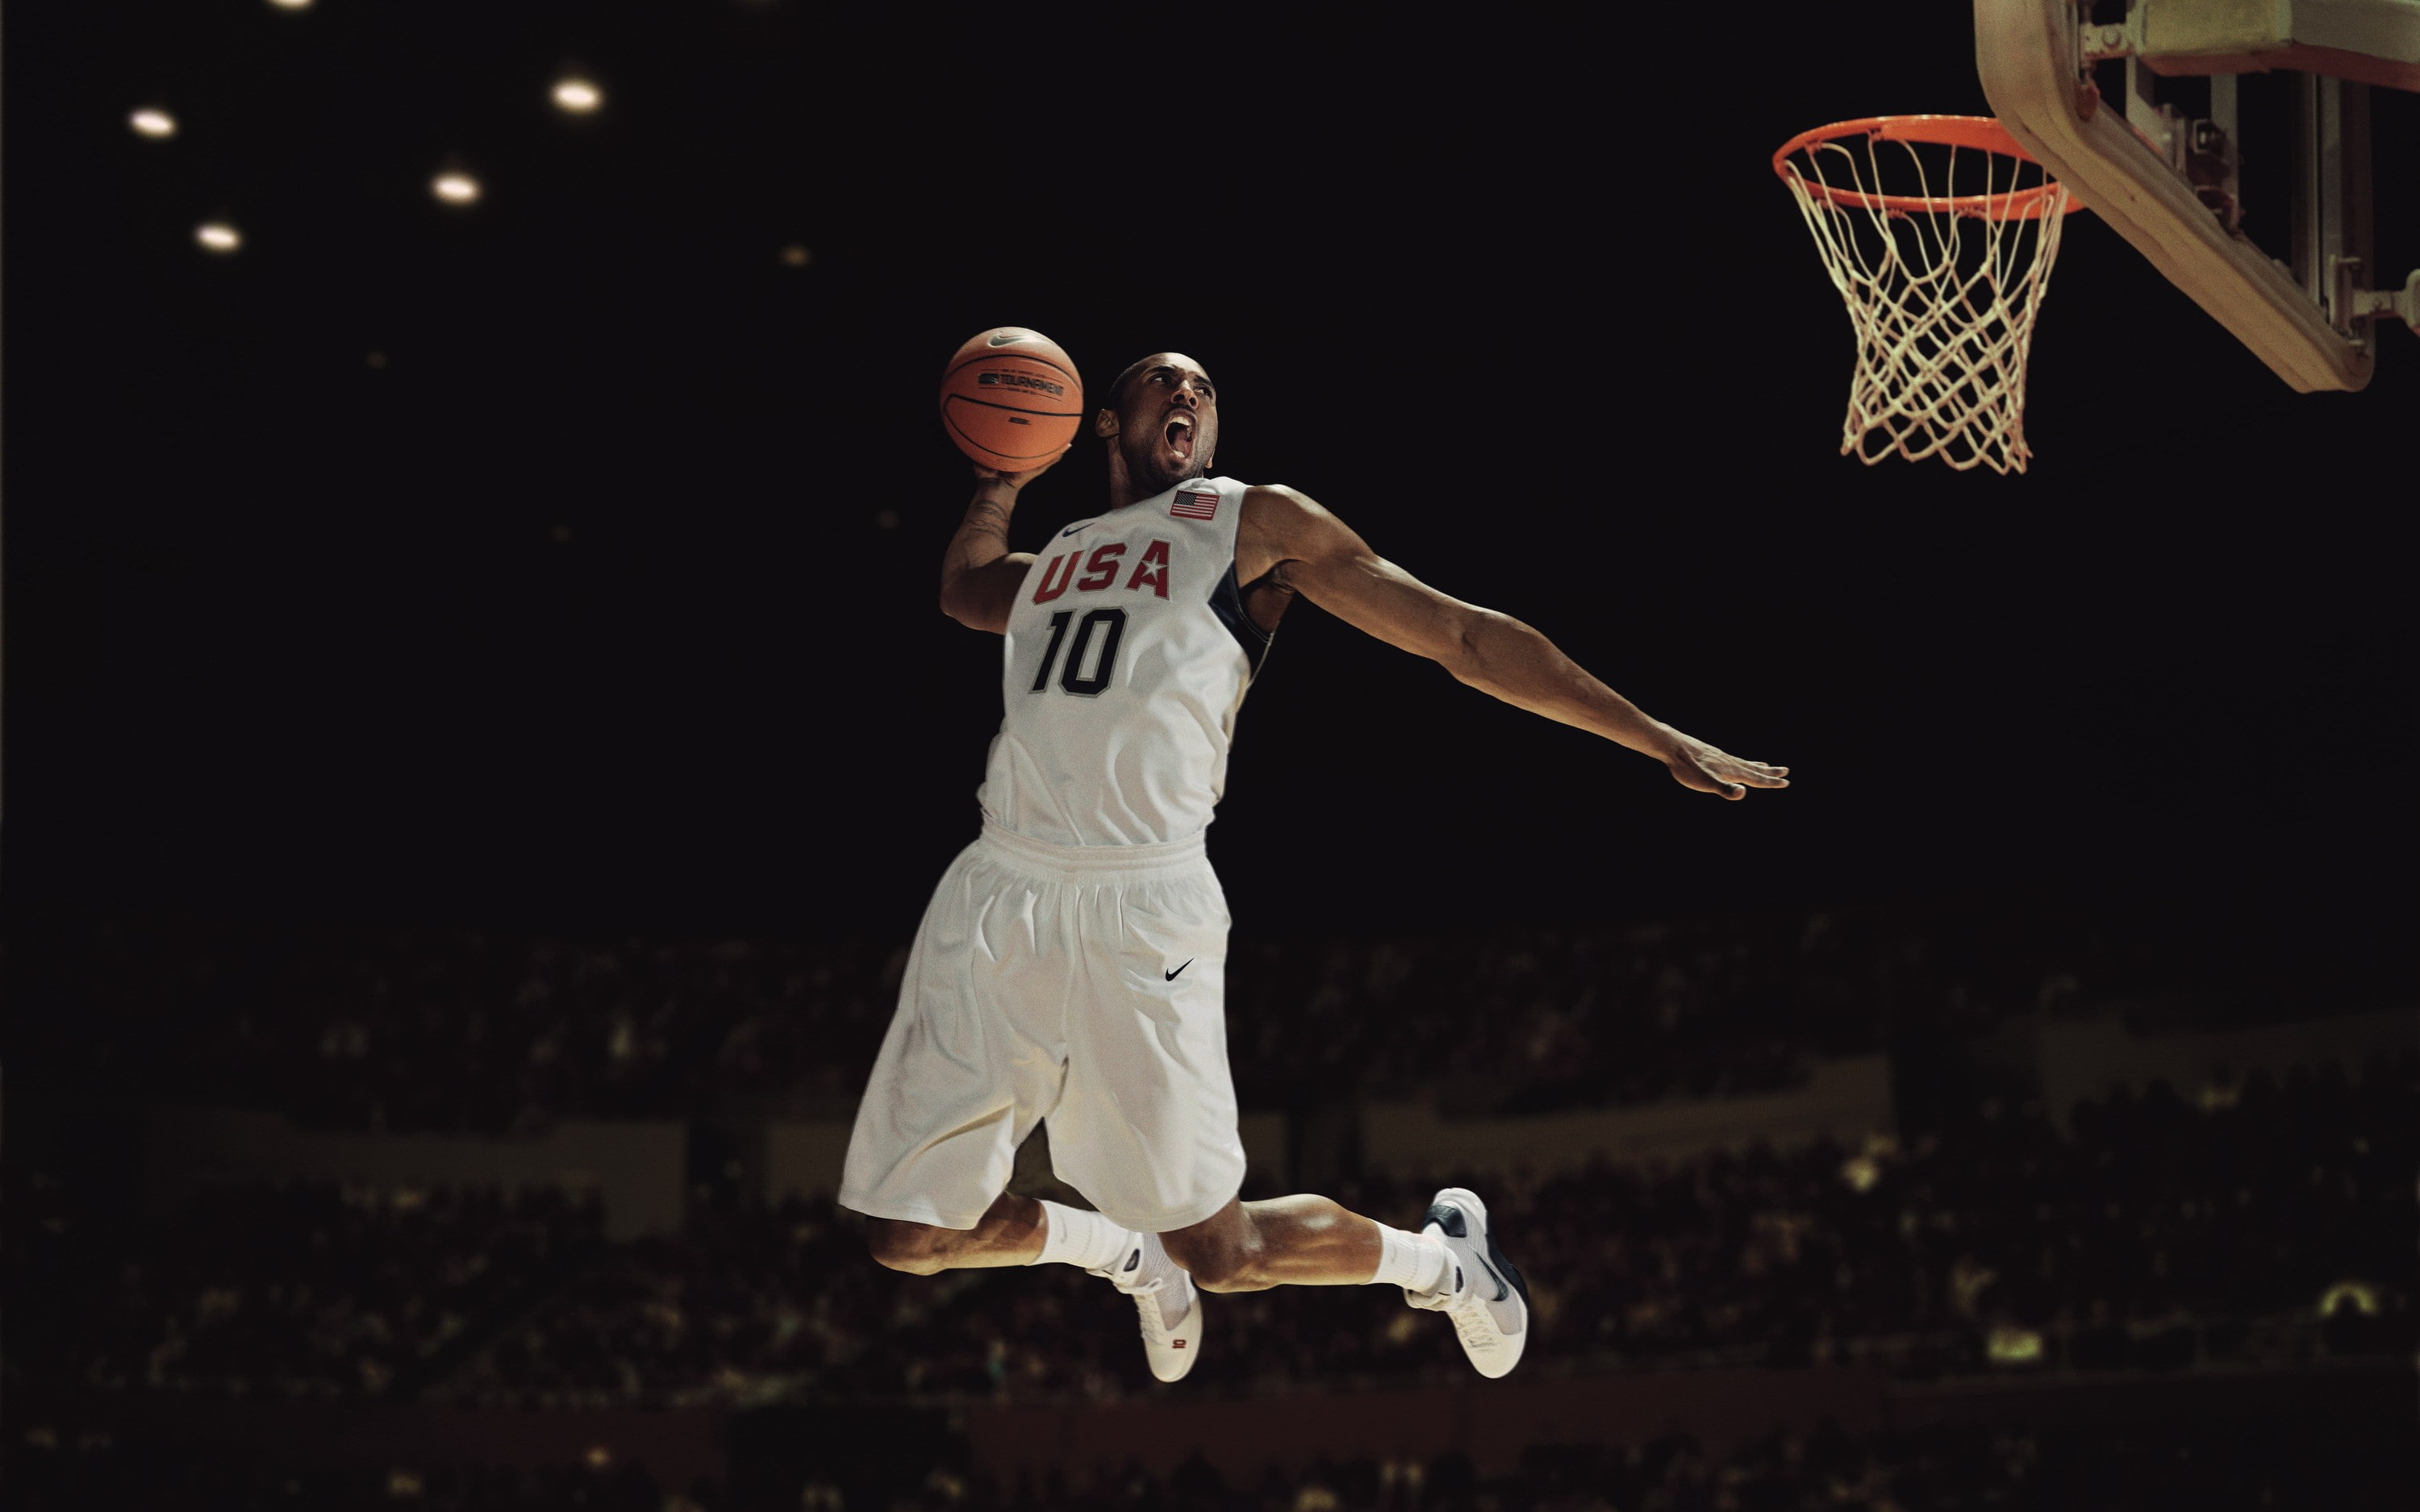 코비 브라이언트 바탕 화면,농구 움직임,농구 선수,농구,농구,농구장